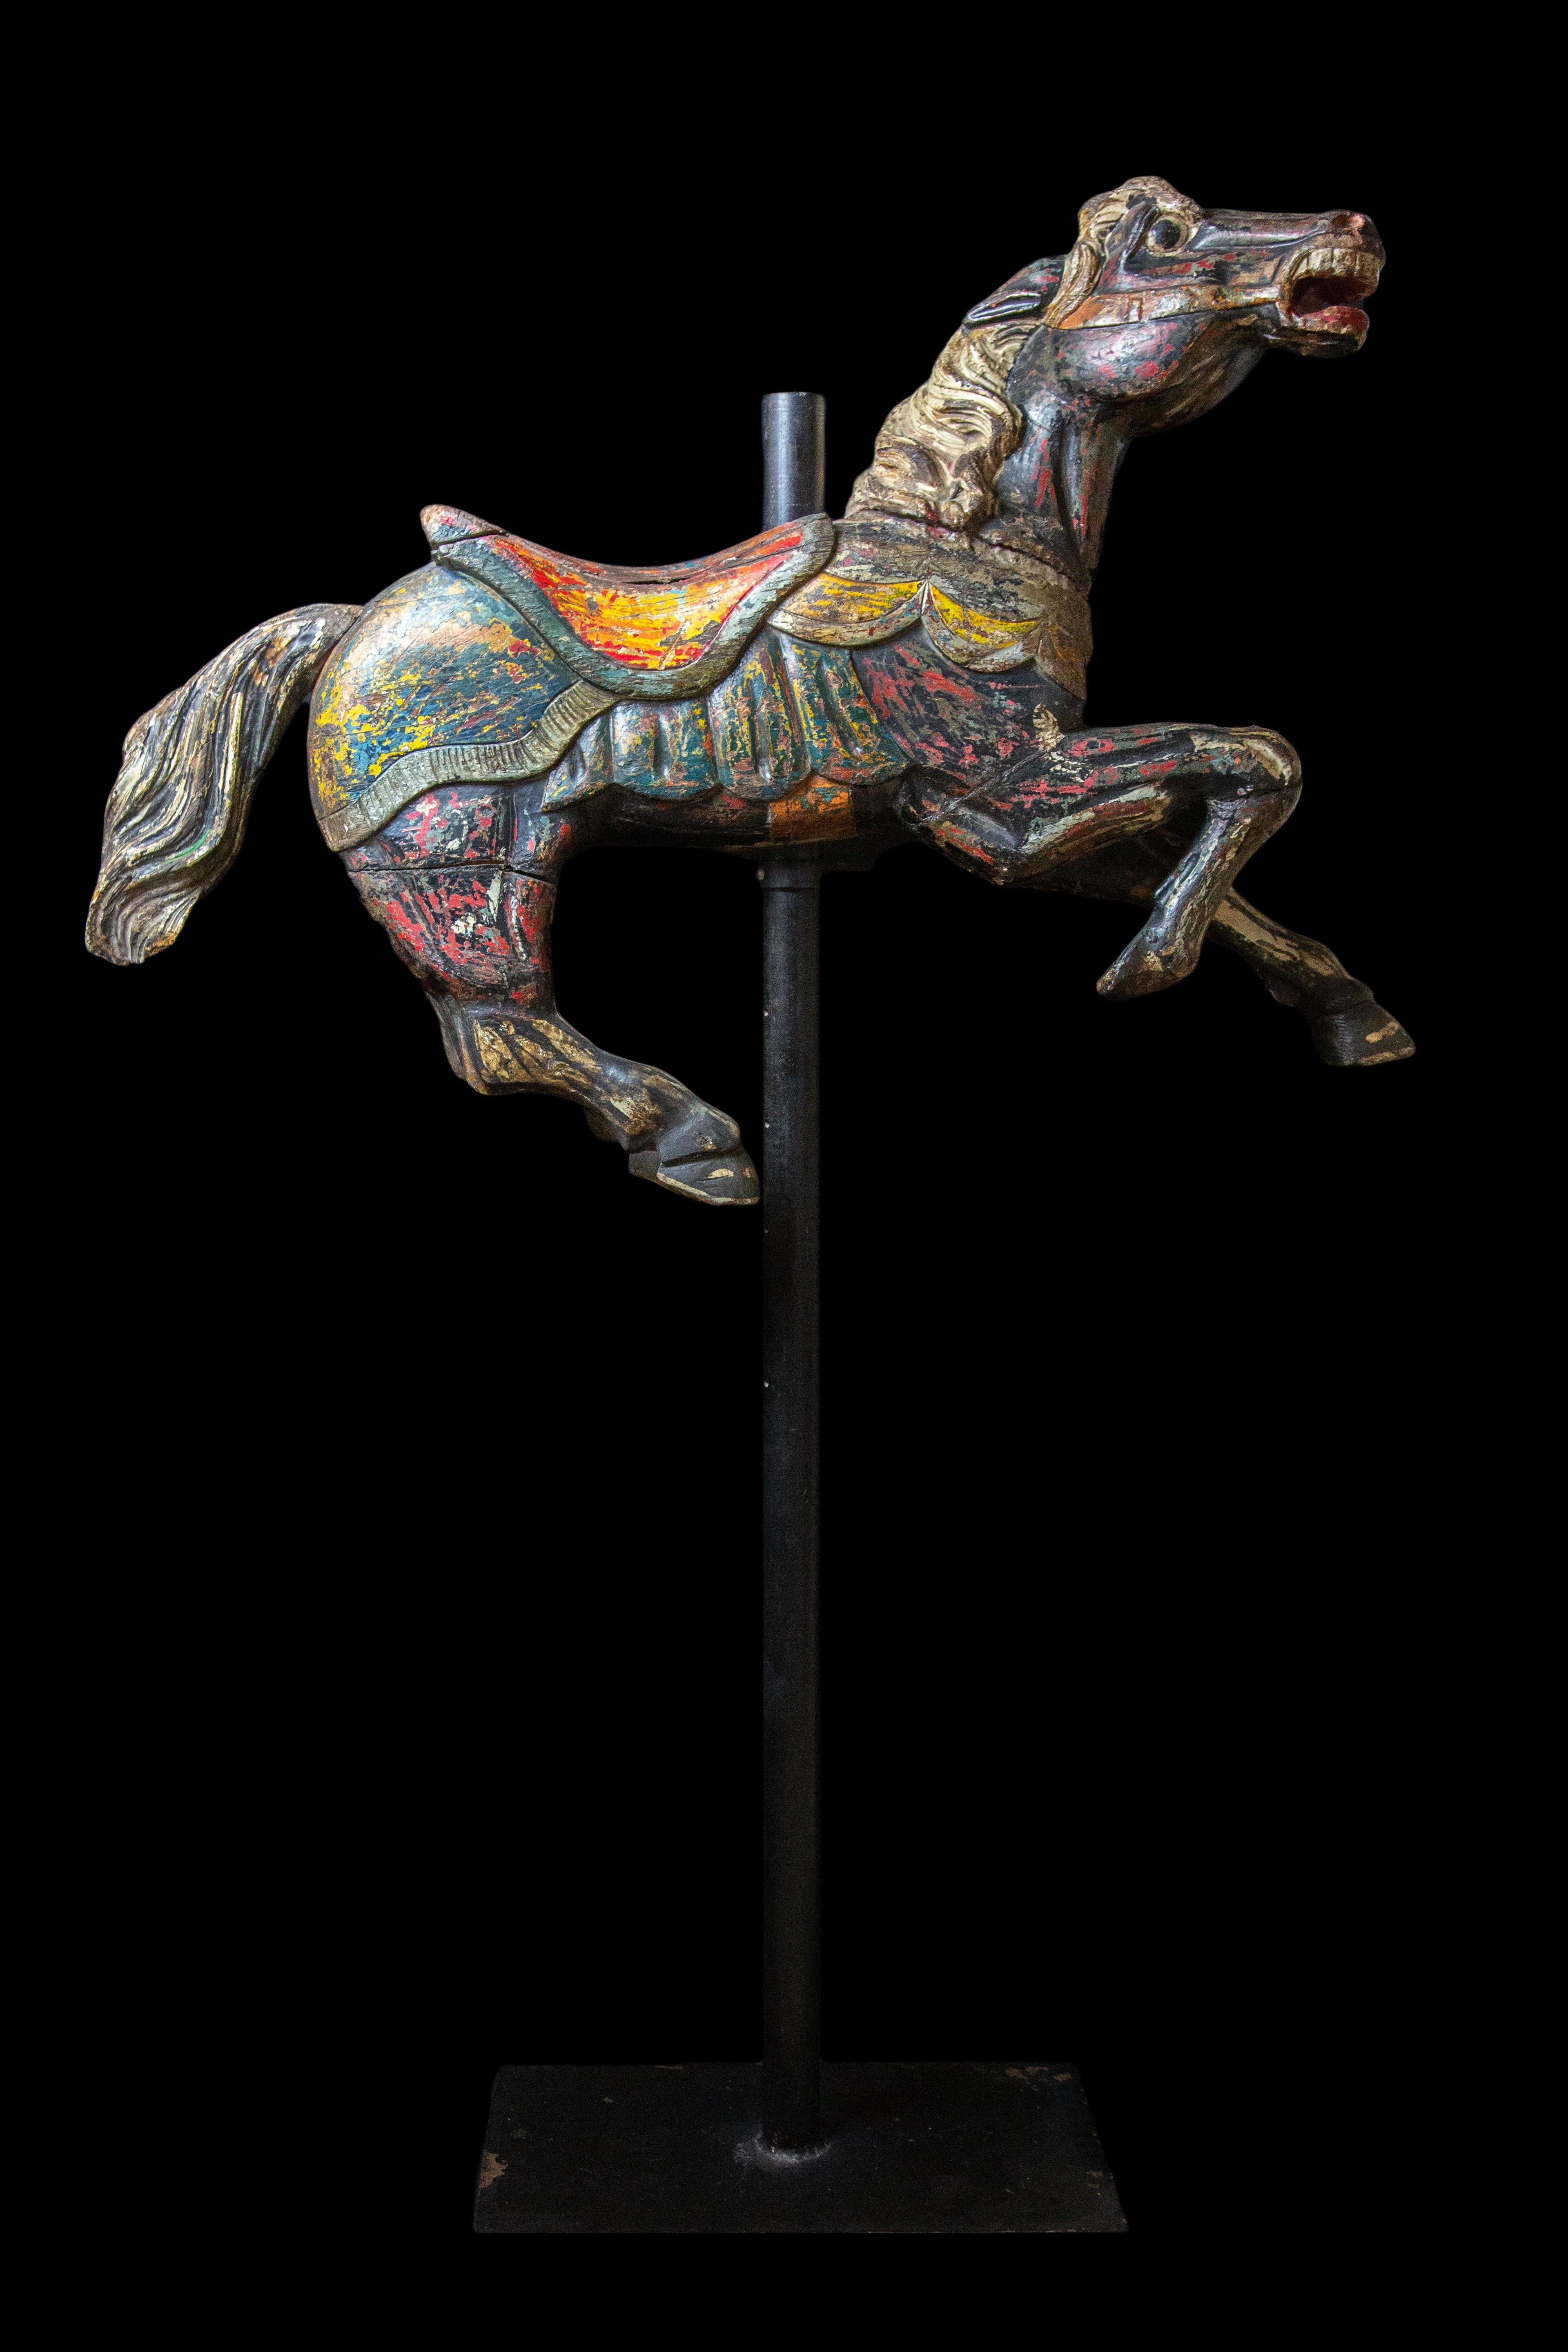 Americana Folk-Art geschnitzt und Farbe dekoriert Holz childs Karussell Pferd:

Montiert auf Metallmastfuß

Maße: 13